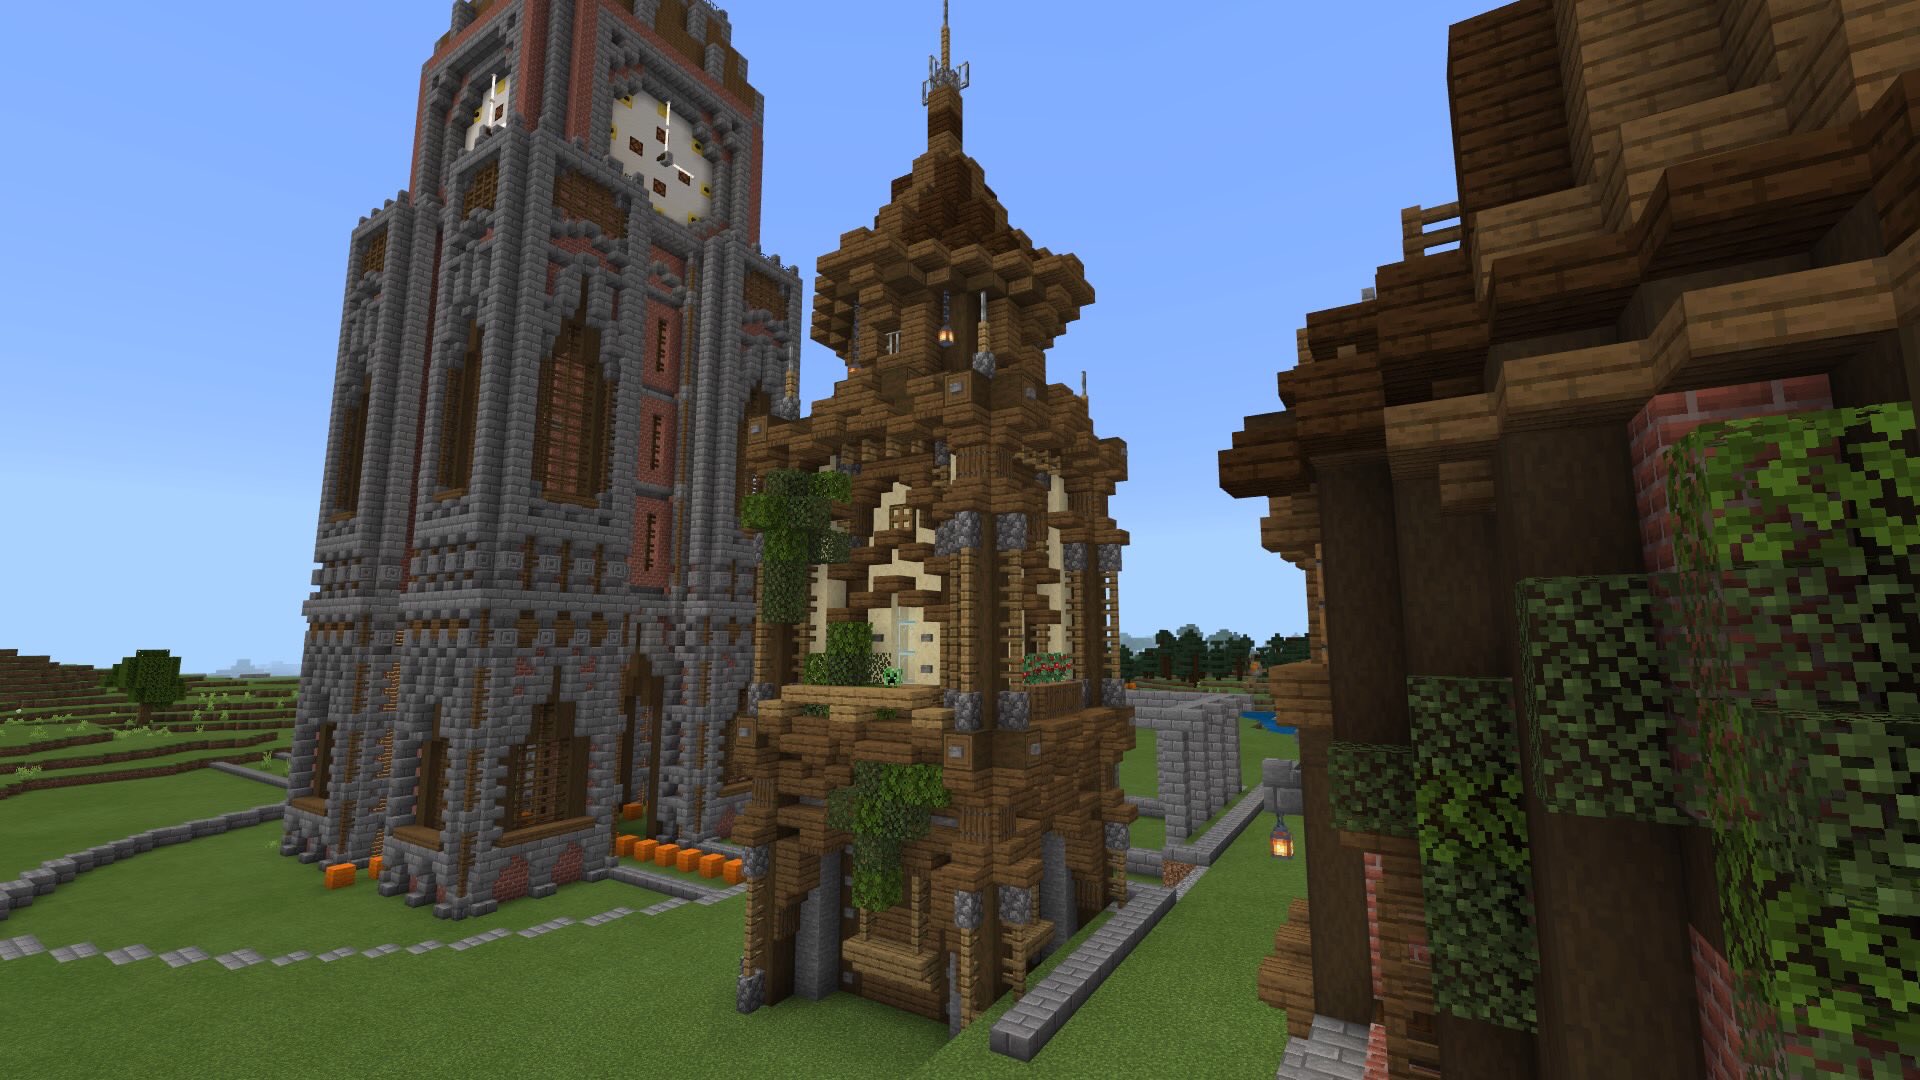 いろはせんぱい マインクラフト Minecraft 小さい塔建ててみました T Co X4rieyvbvg Twitter